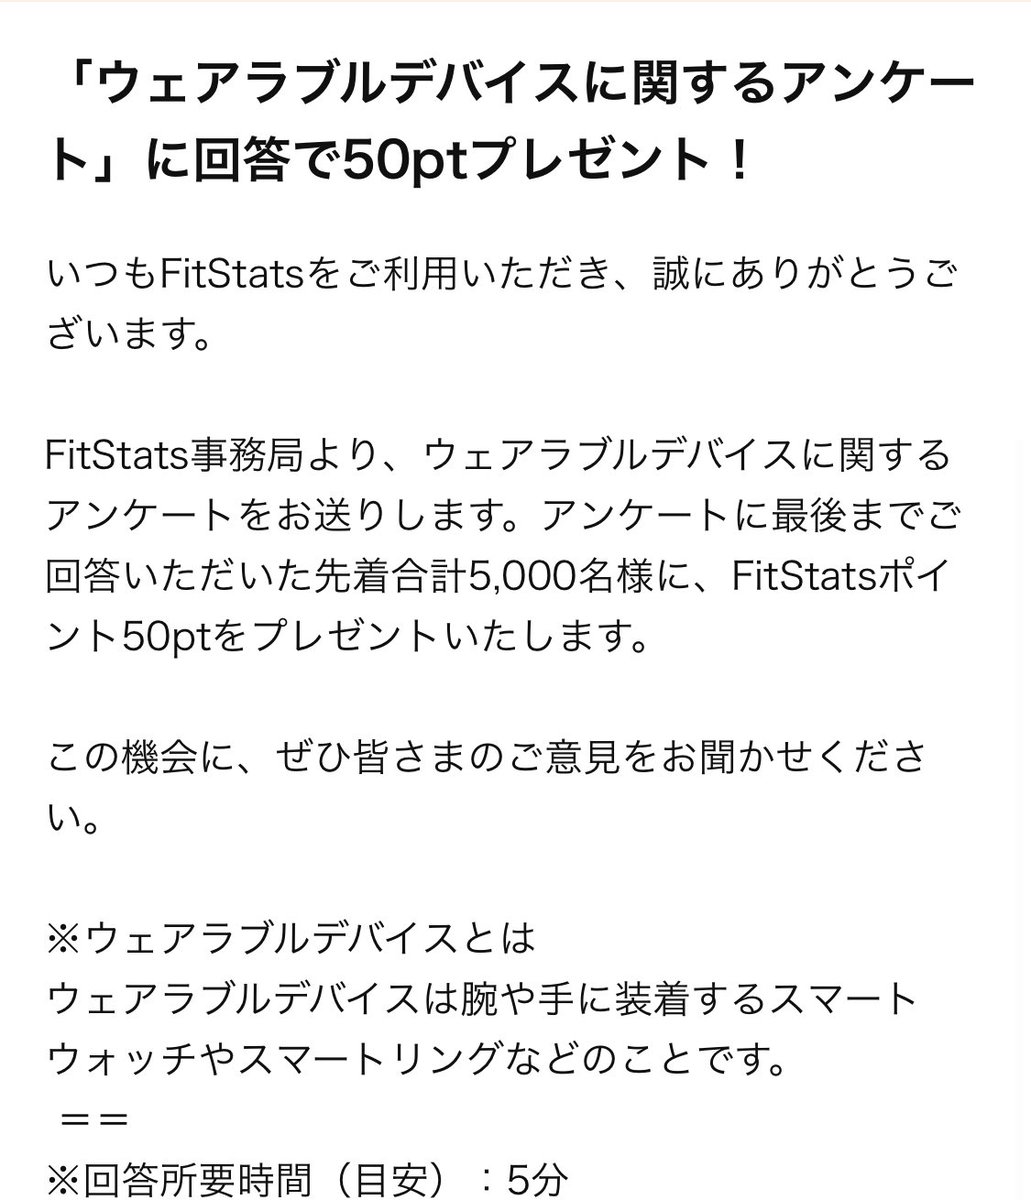 FitStats
先着5000名

ウェアラブルデバイスに関するアンケート回答で50円㌽